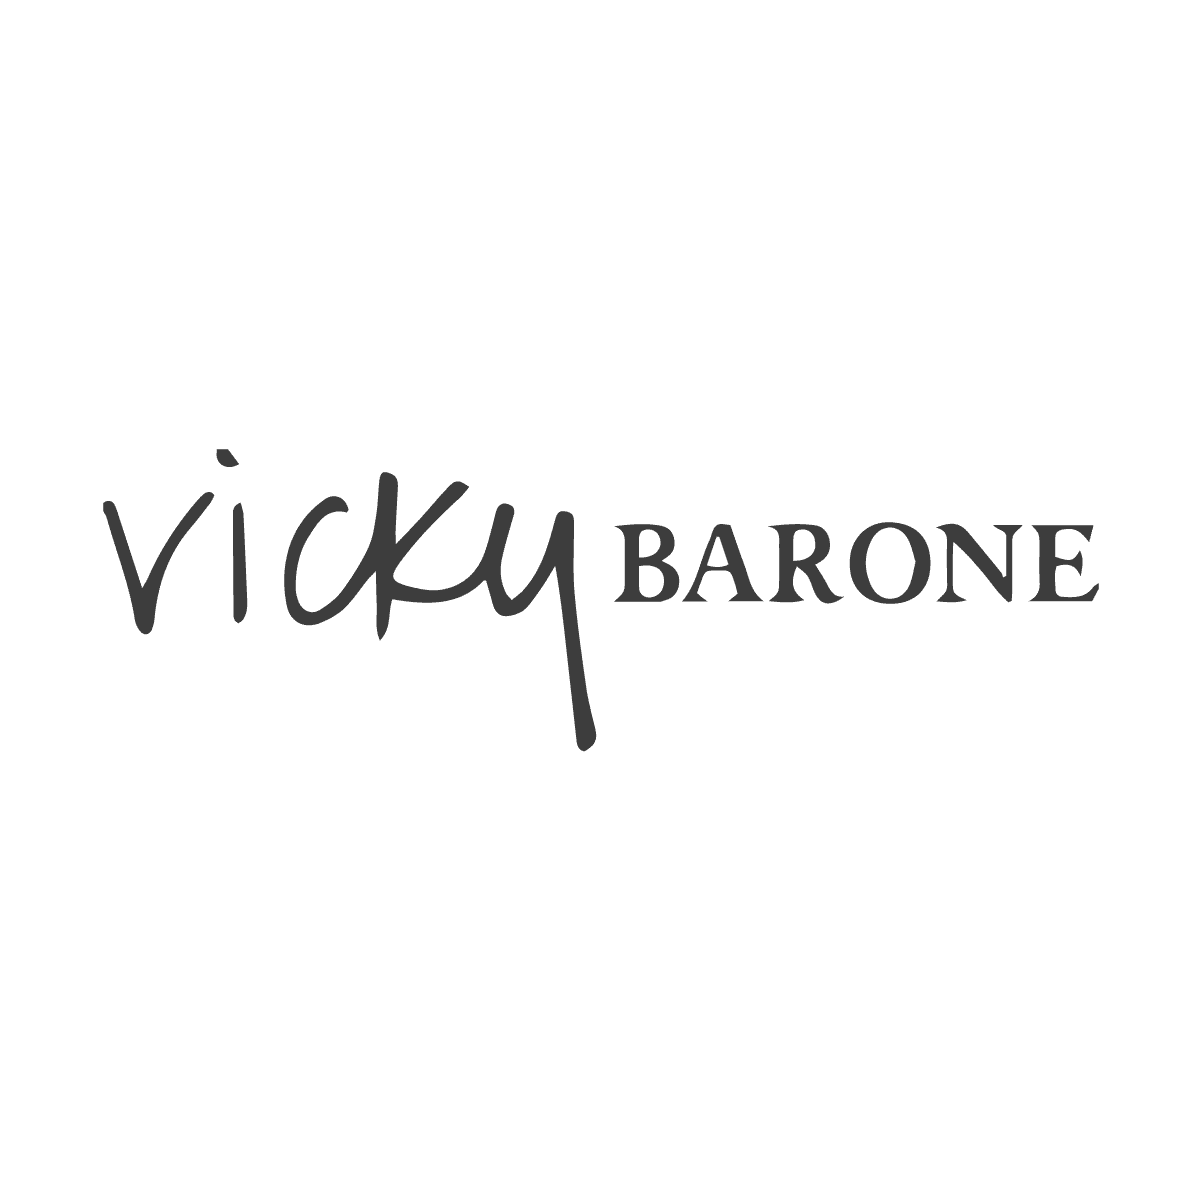 Vicky Barone logo